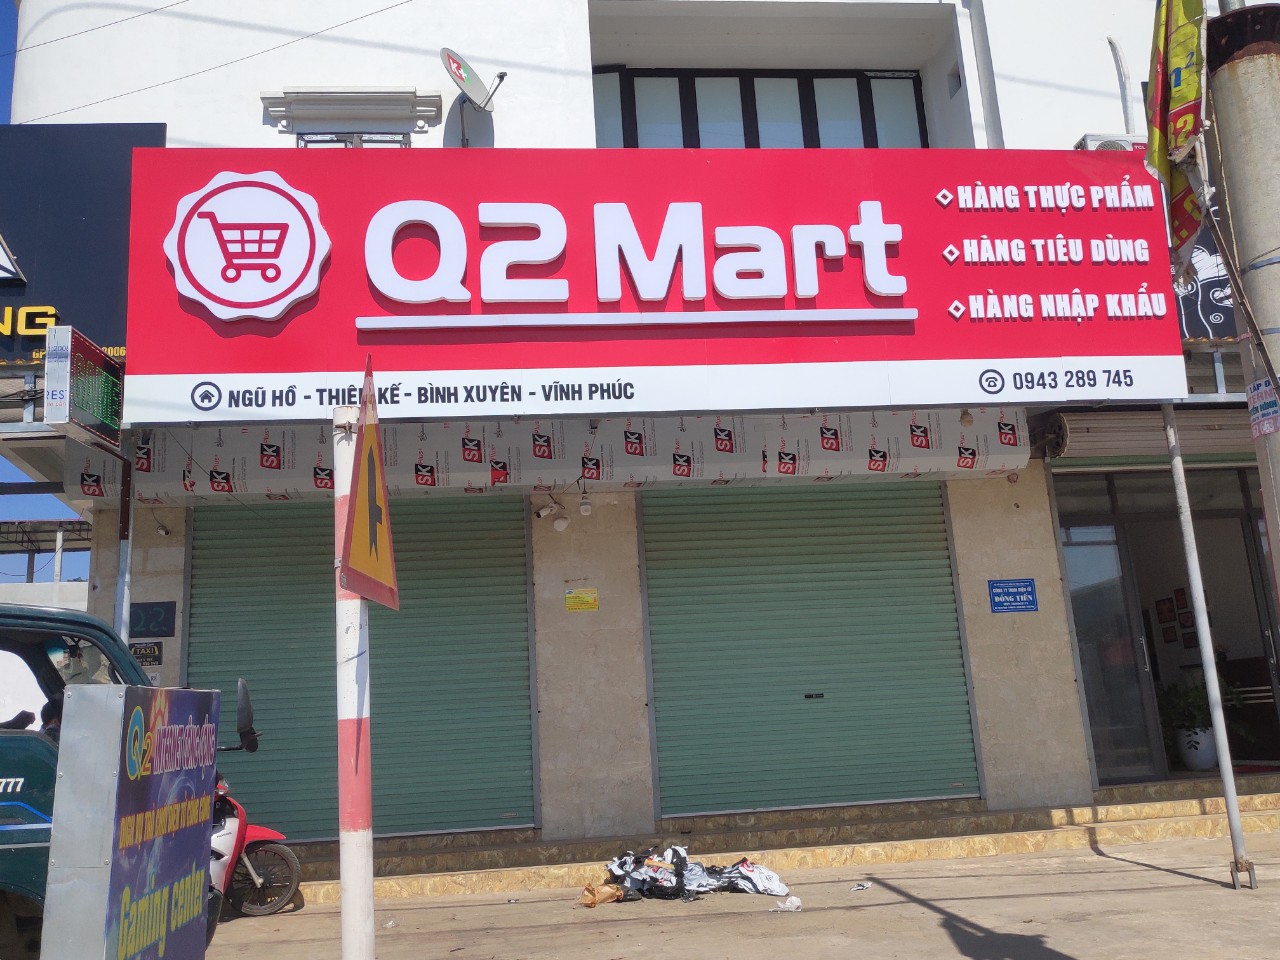 Công Trình] Biển bảng và Kệ hàng siêu thị minh Q2 MART Tại Vĩnh Phúc